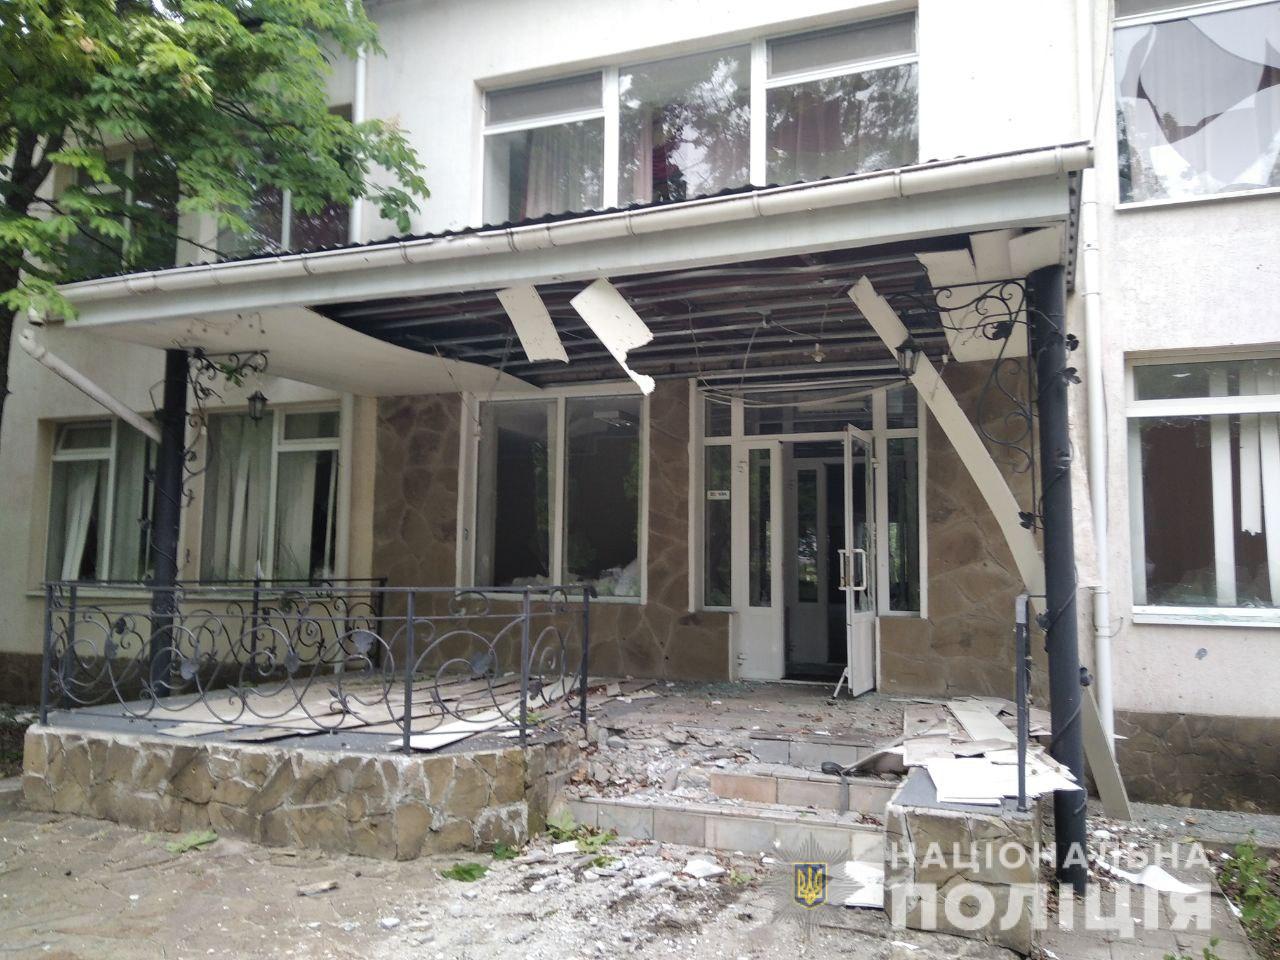 Били из “Ураганов” и танков: 26 мая в Донецкой области оккупанты разрушили 94 мирных объекта. Есть погибшие 3